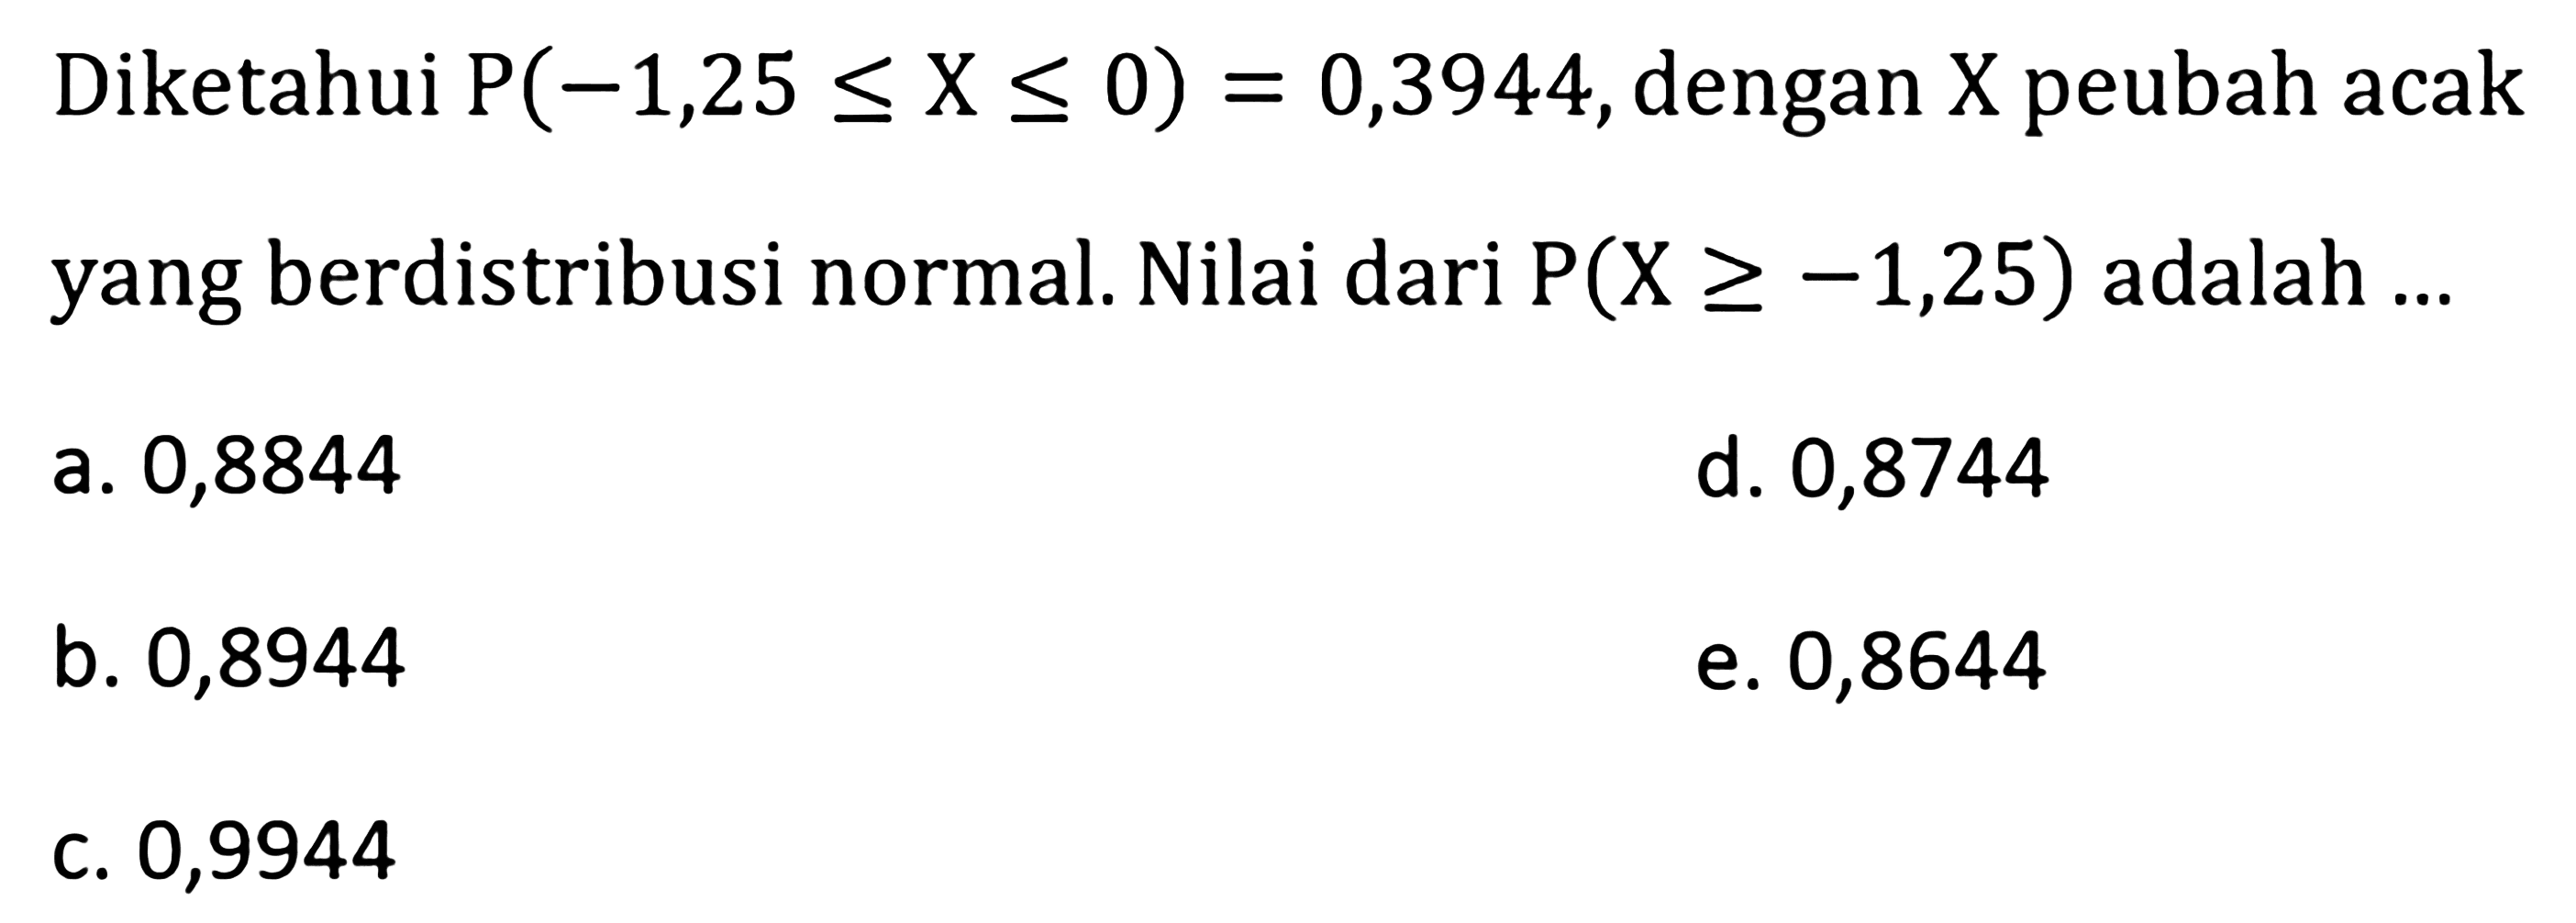 Diketahui P(-1,25<=X<=0)=0,3944, dengan X peubah acak yang berdistribusi normal. Nilai dari P(X>=-1,25) adalah...